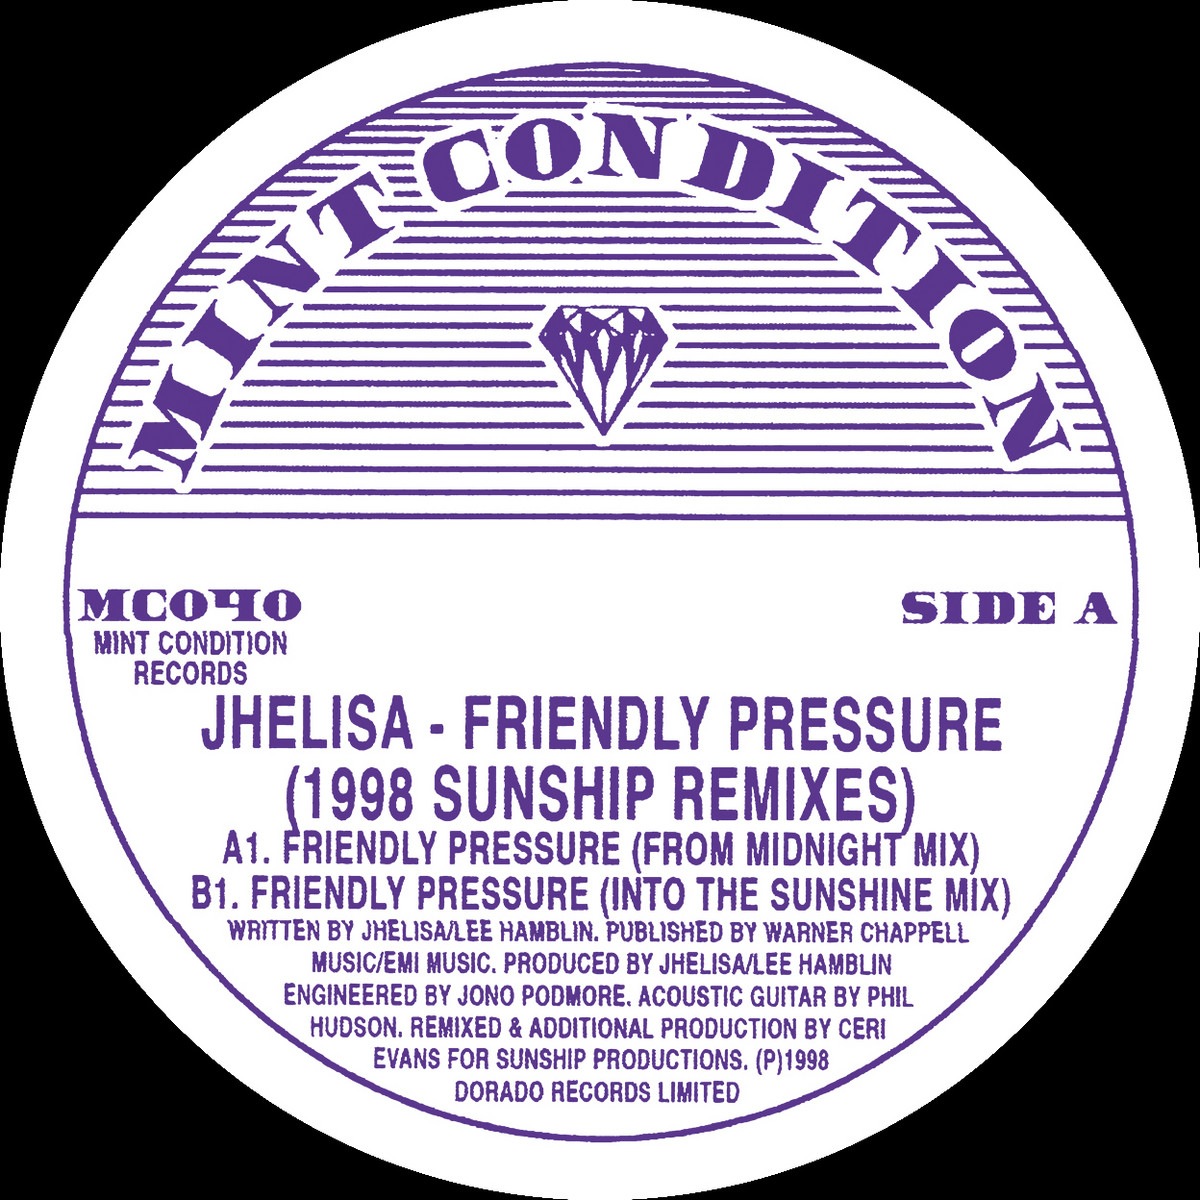 Jhelisa - Friendly Pressure (1998 Sunship Remixes) - MC040 - MINT CONDITION